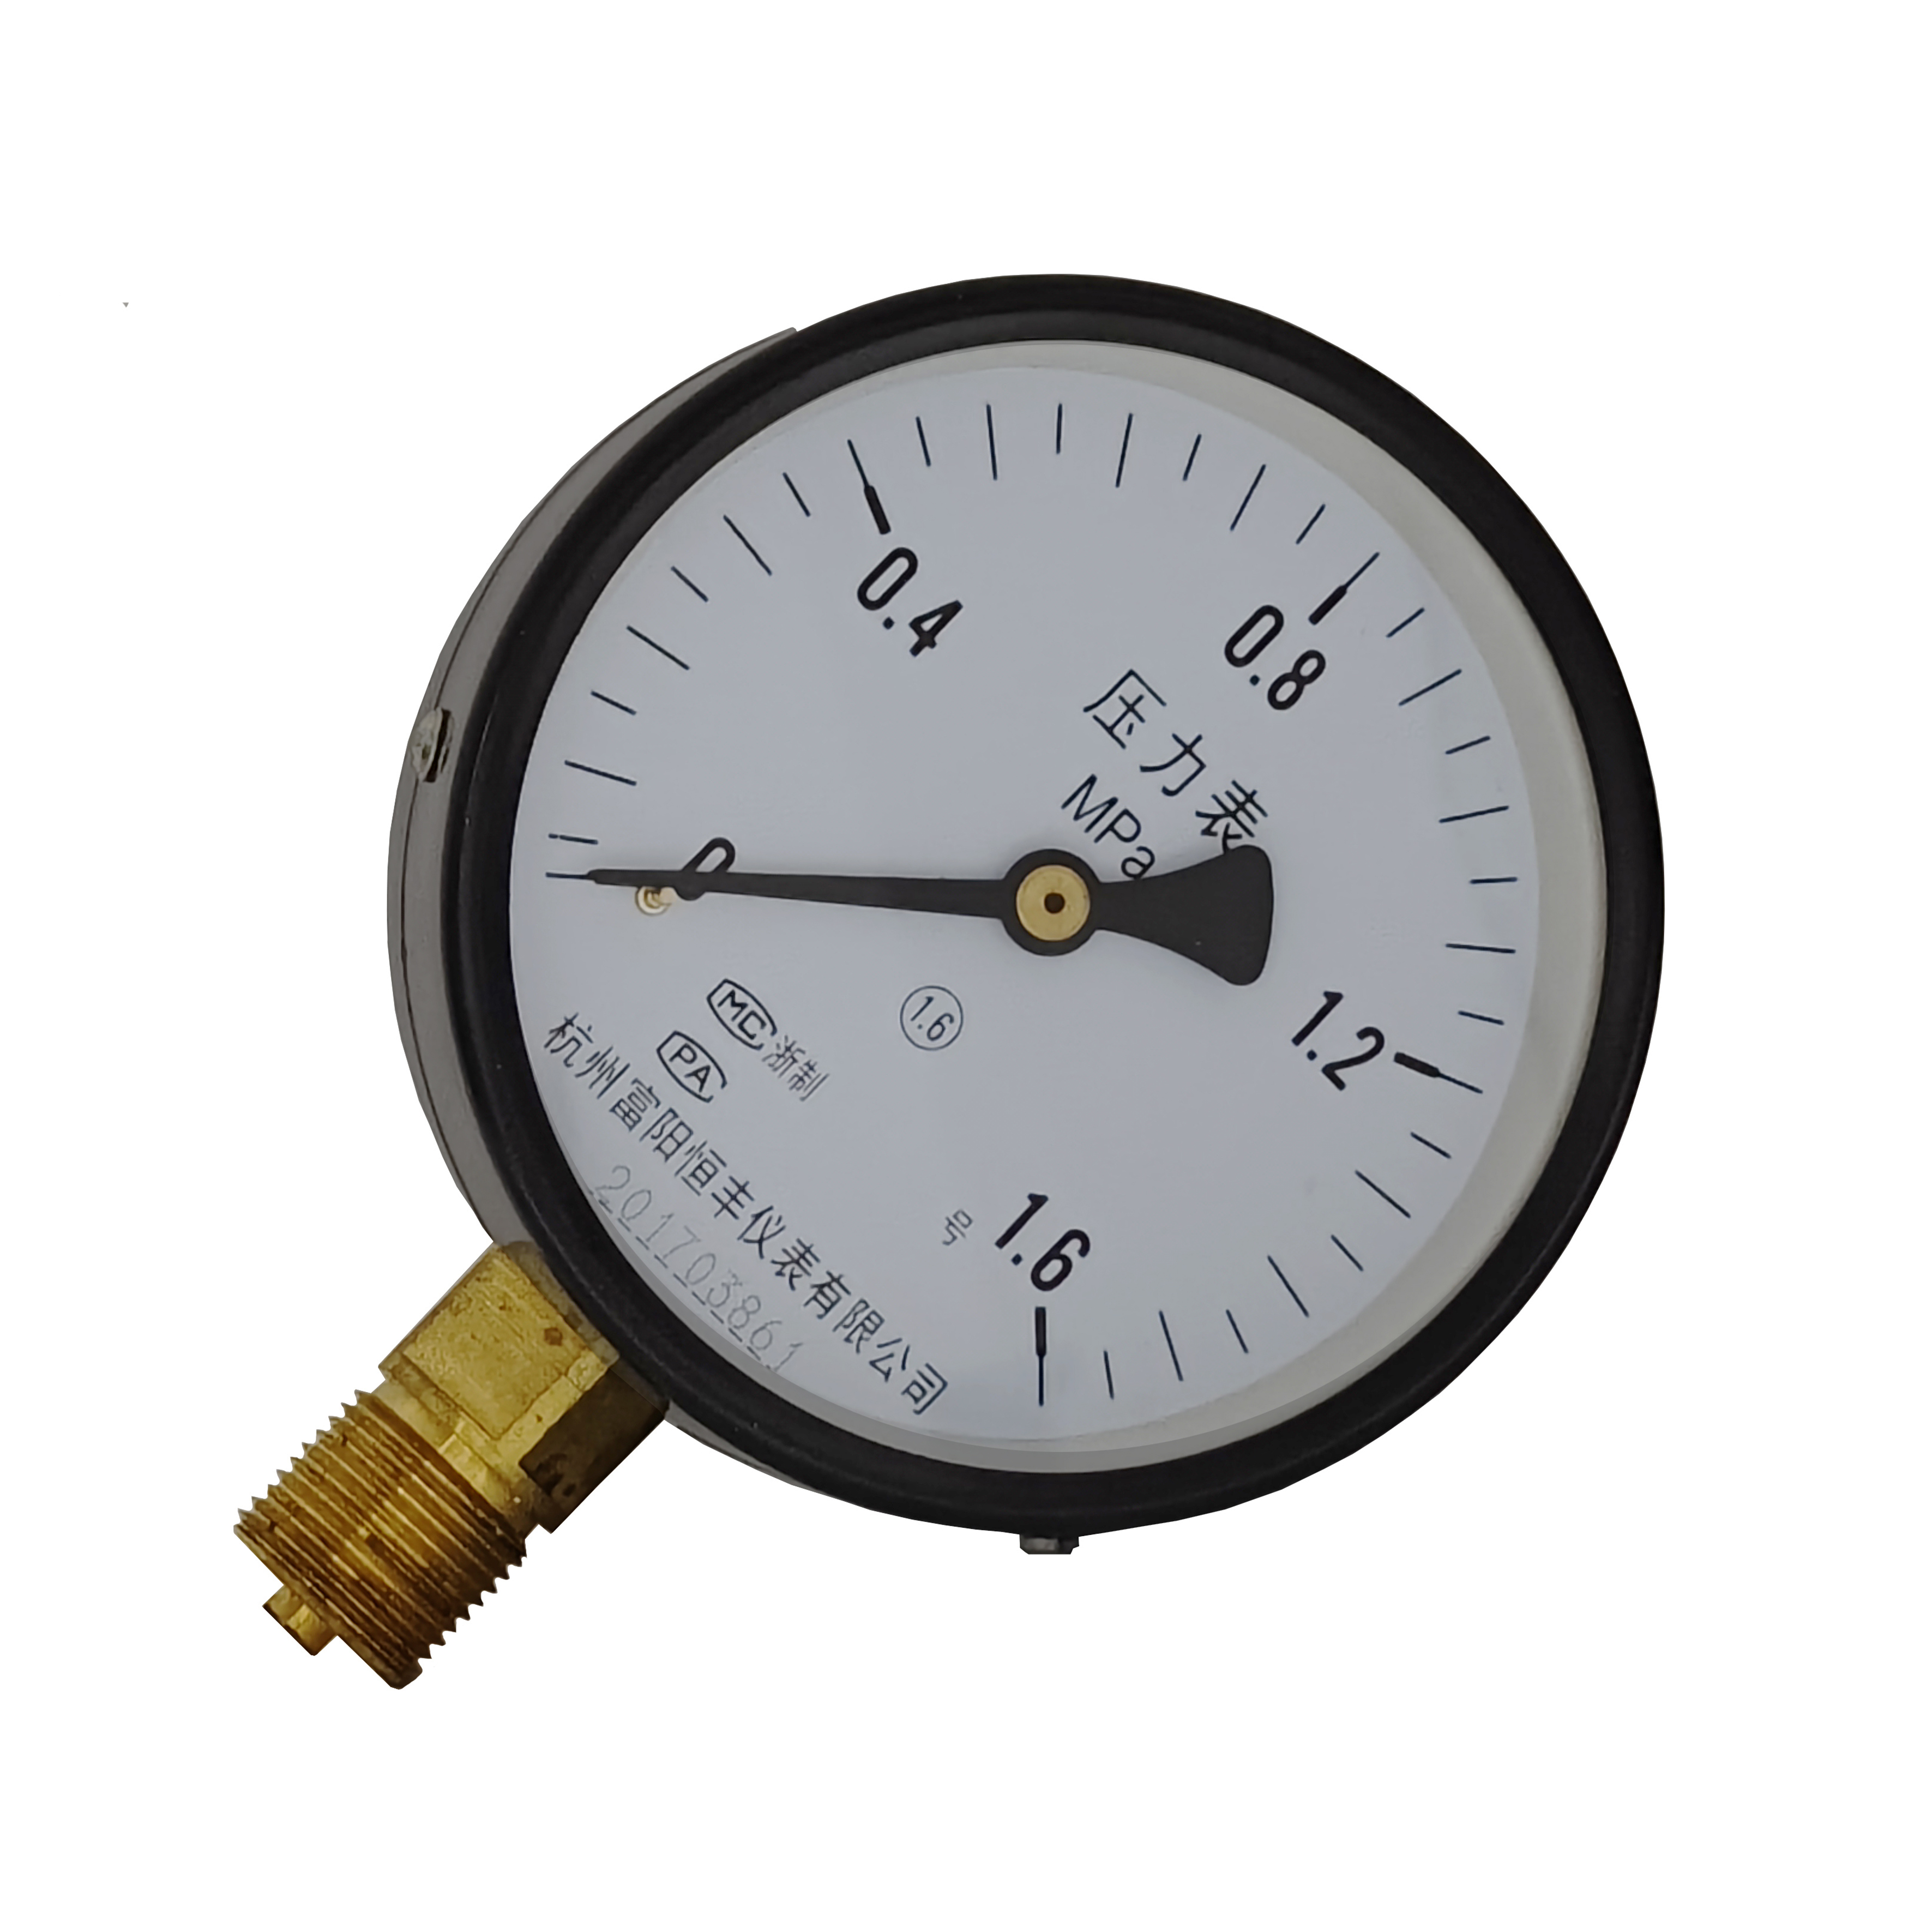 Y100 ordinary pressure gauge